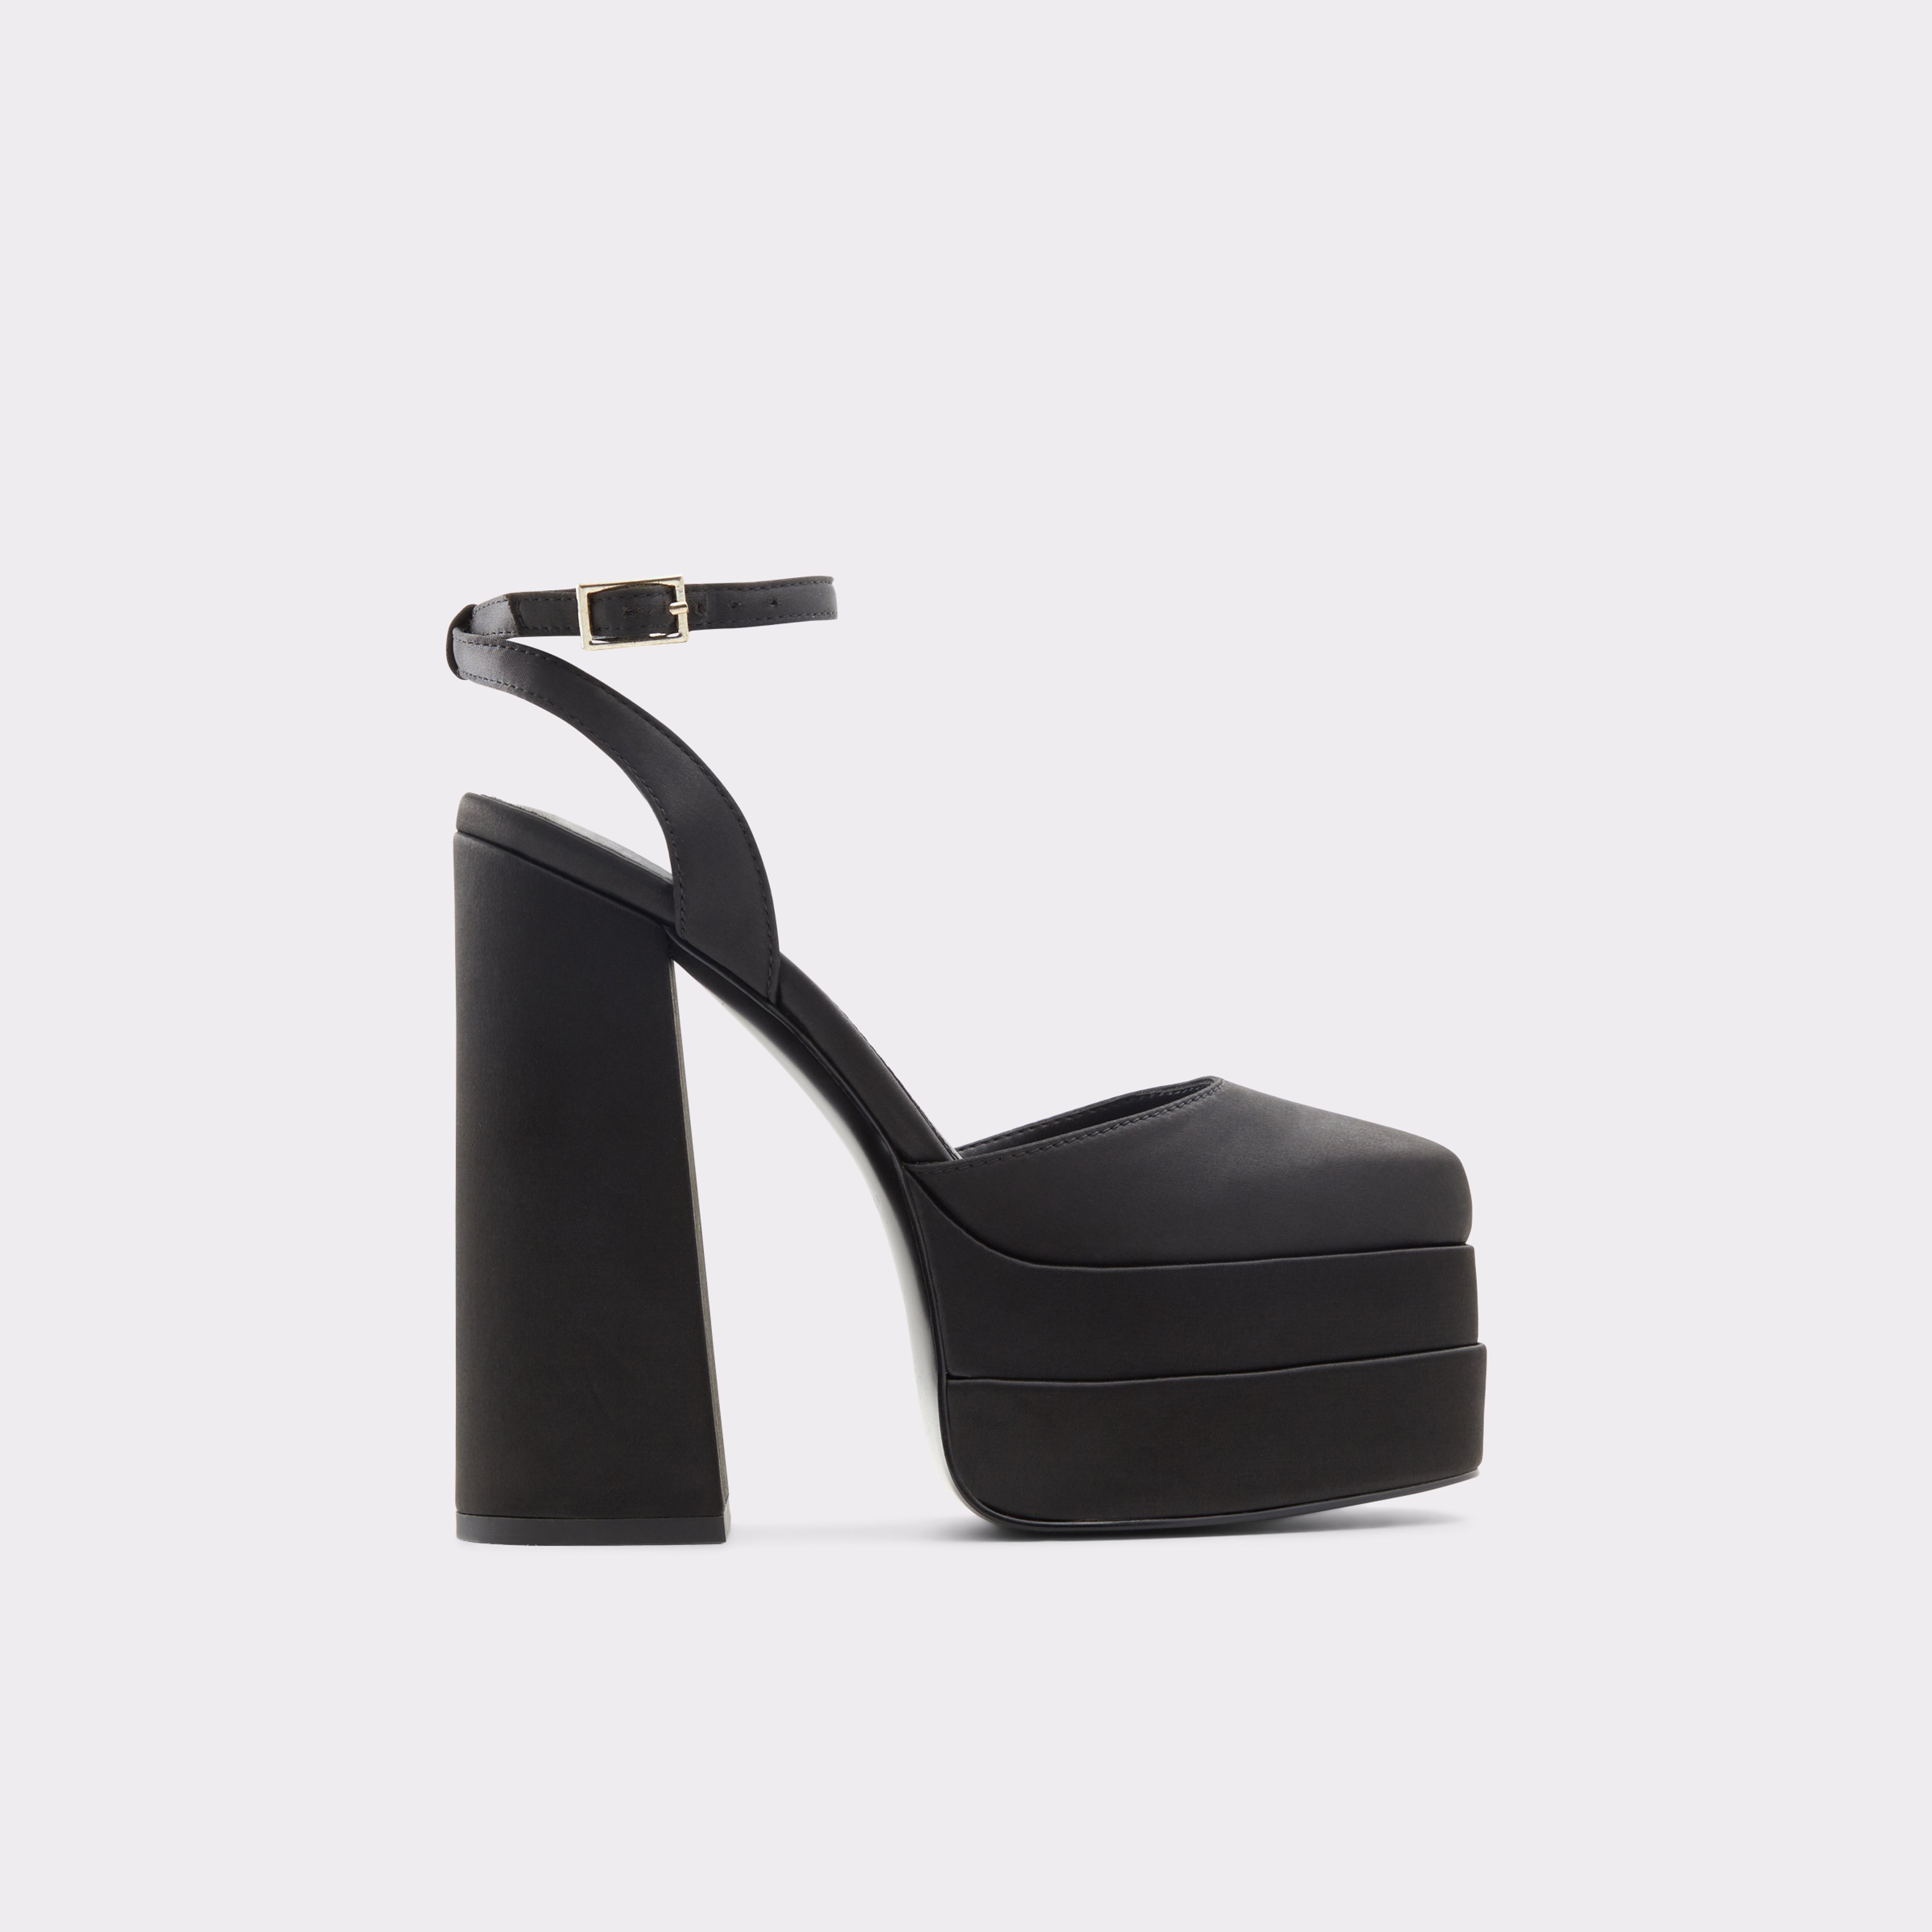 Kersaudy Black Textile Other Women's Platform Shoes | ALDO US